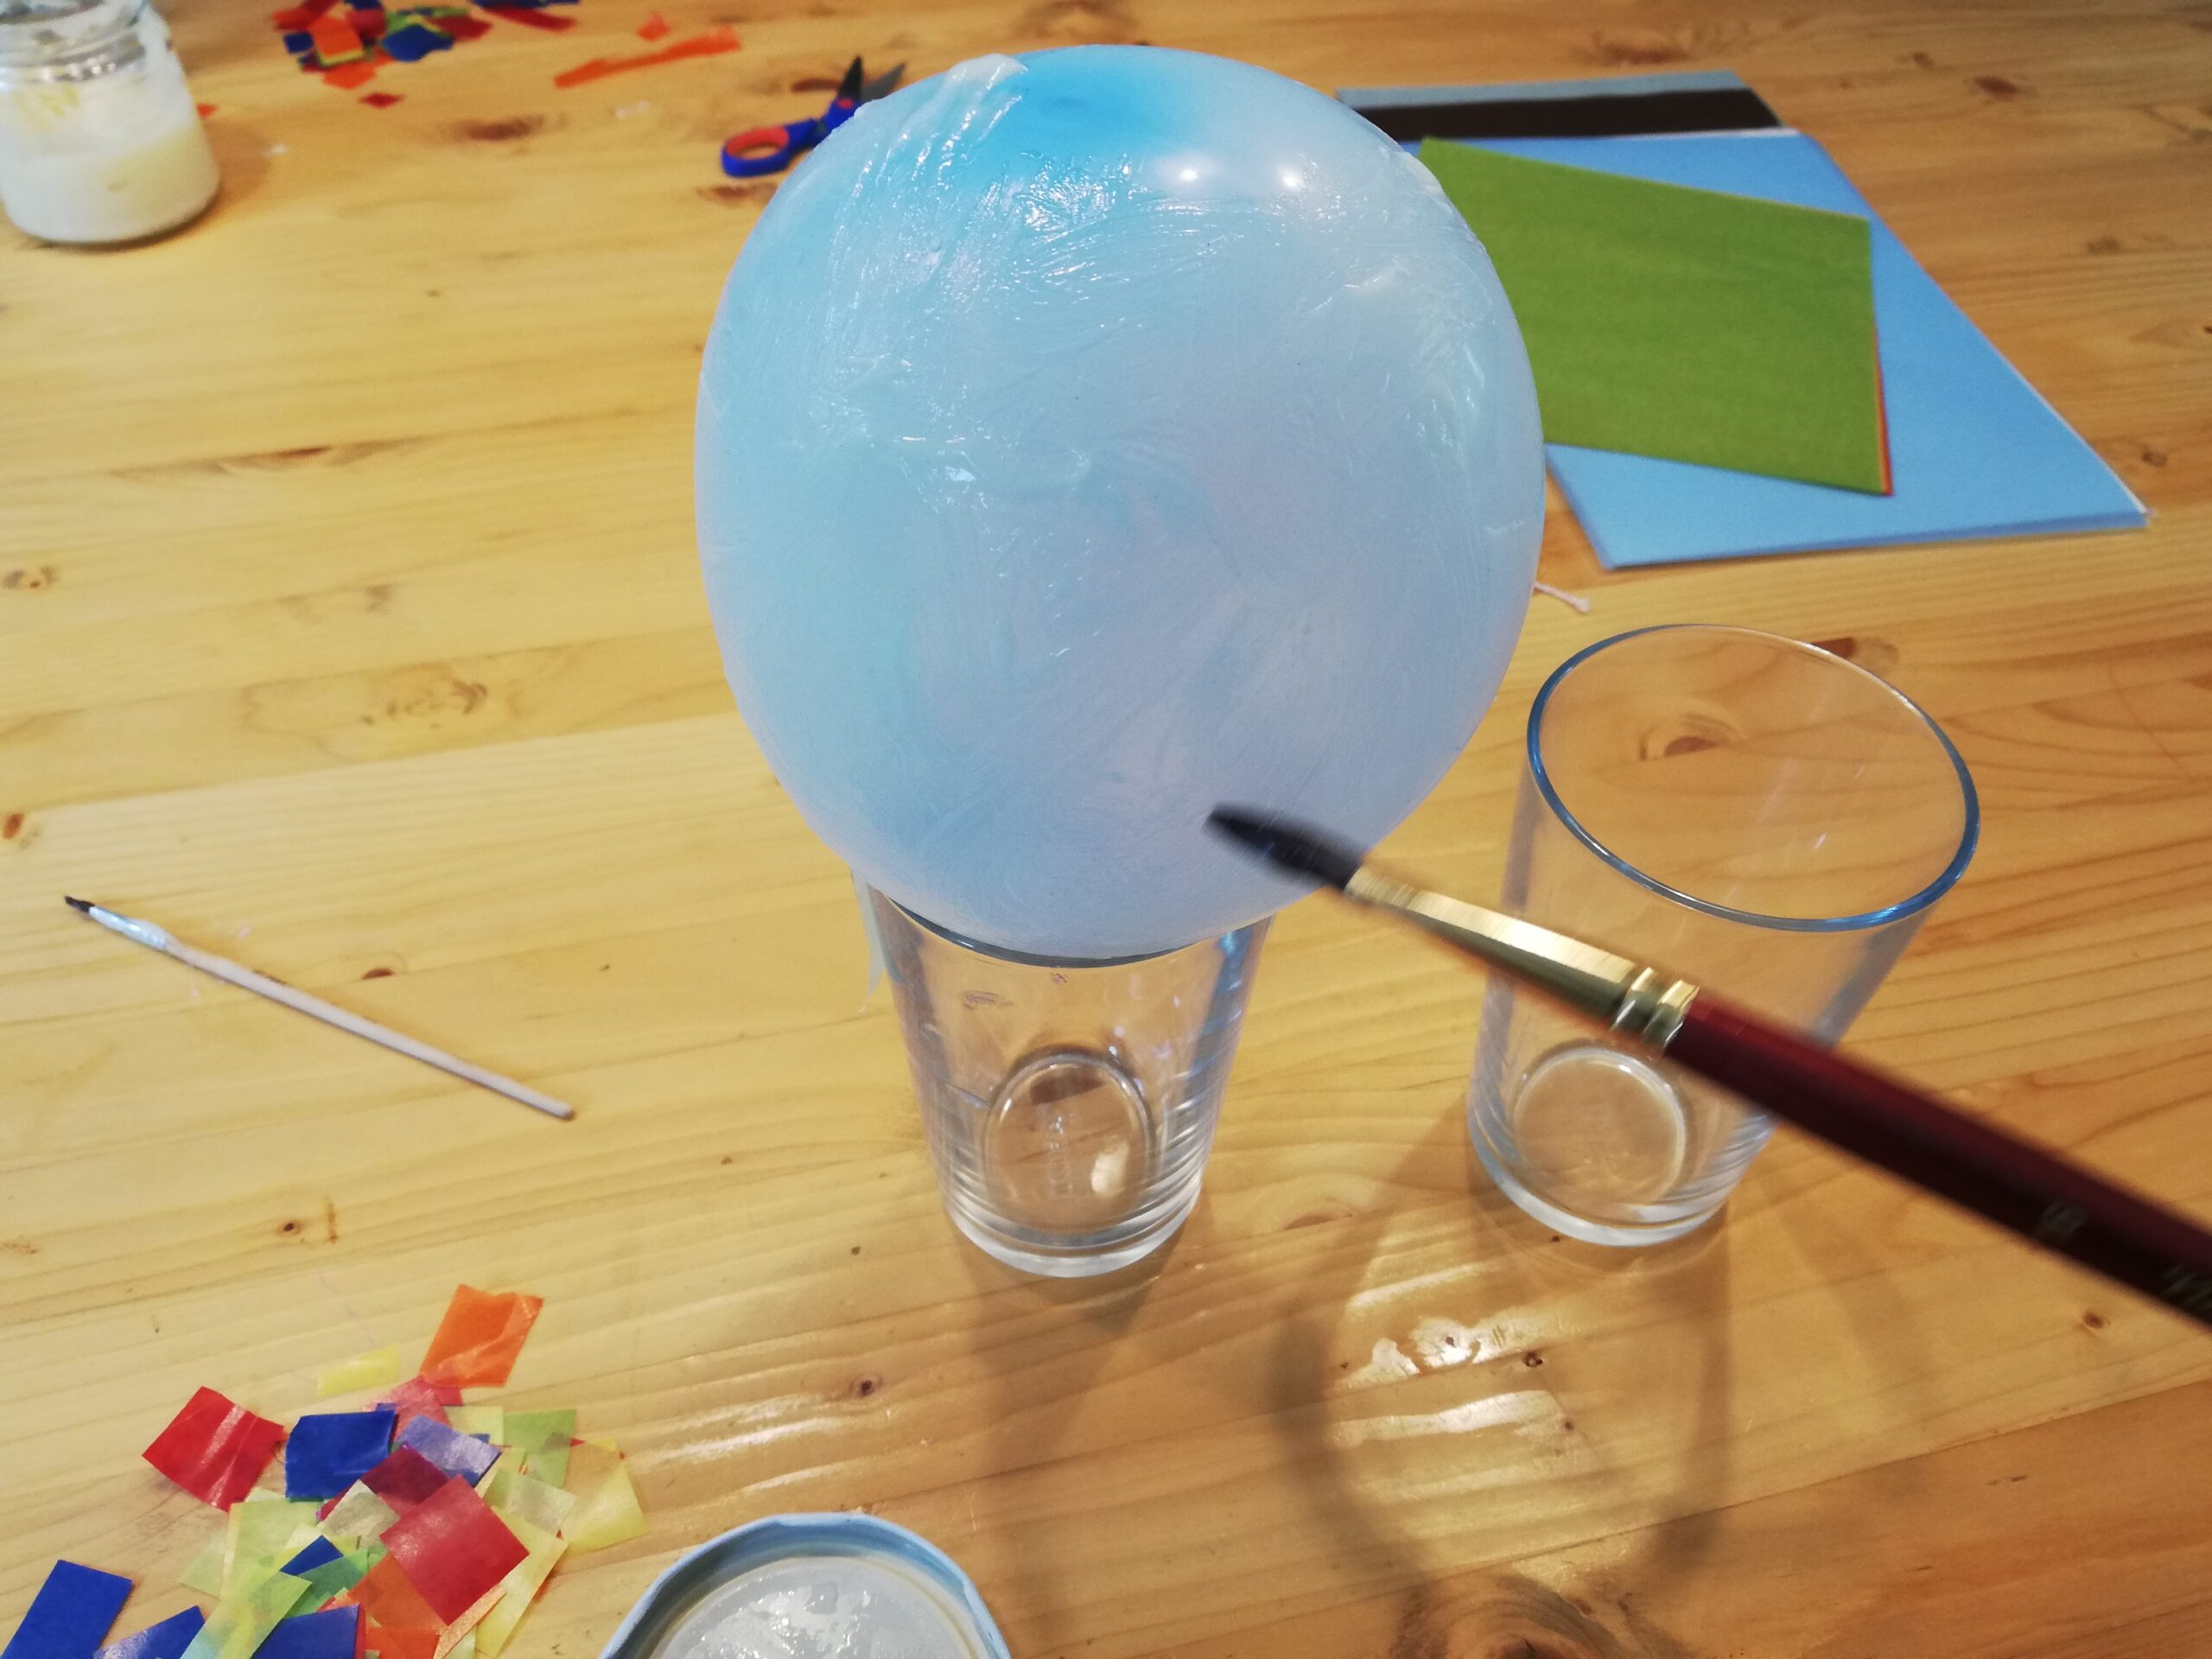 Bild zum Schritt 7 für das Bastel- und DIY-Abenteuer für Kinder: 'Jetzt streicht ihr den Luftballon mit Kleister ein.  ...'